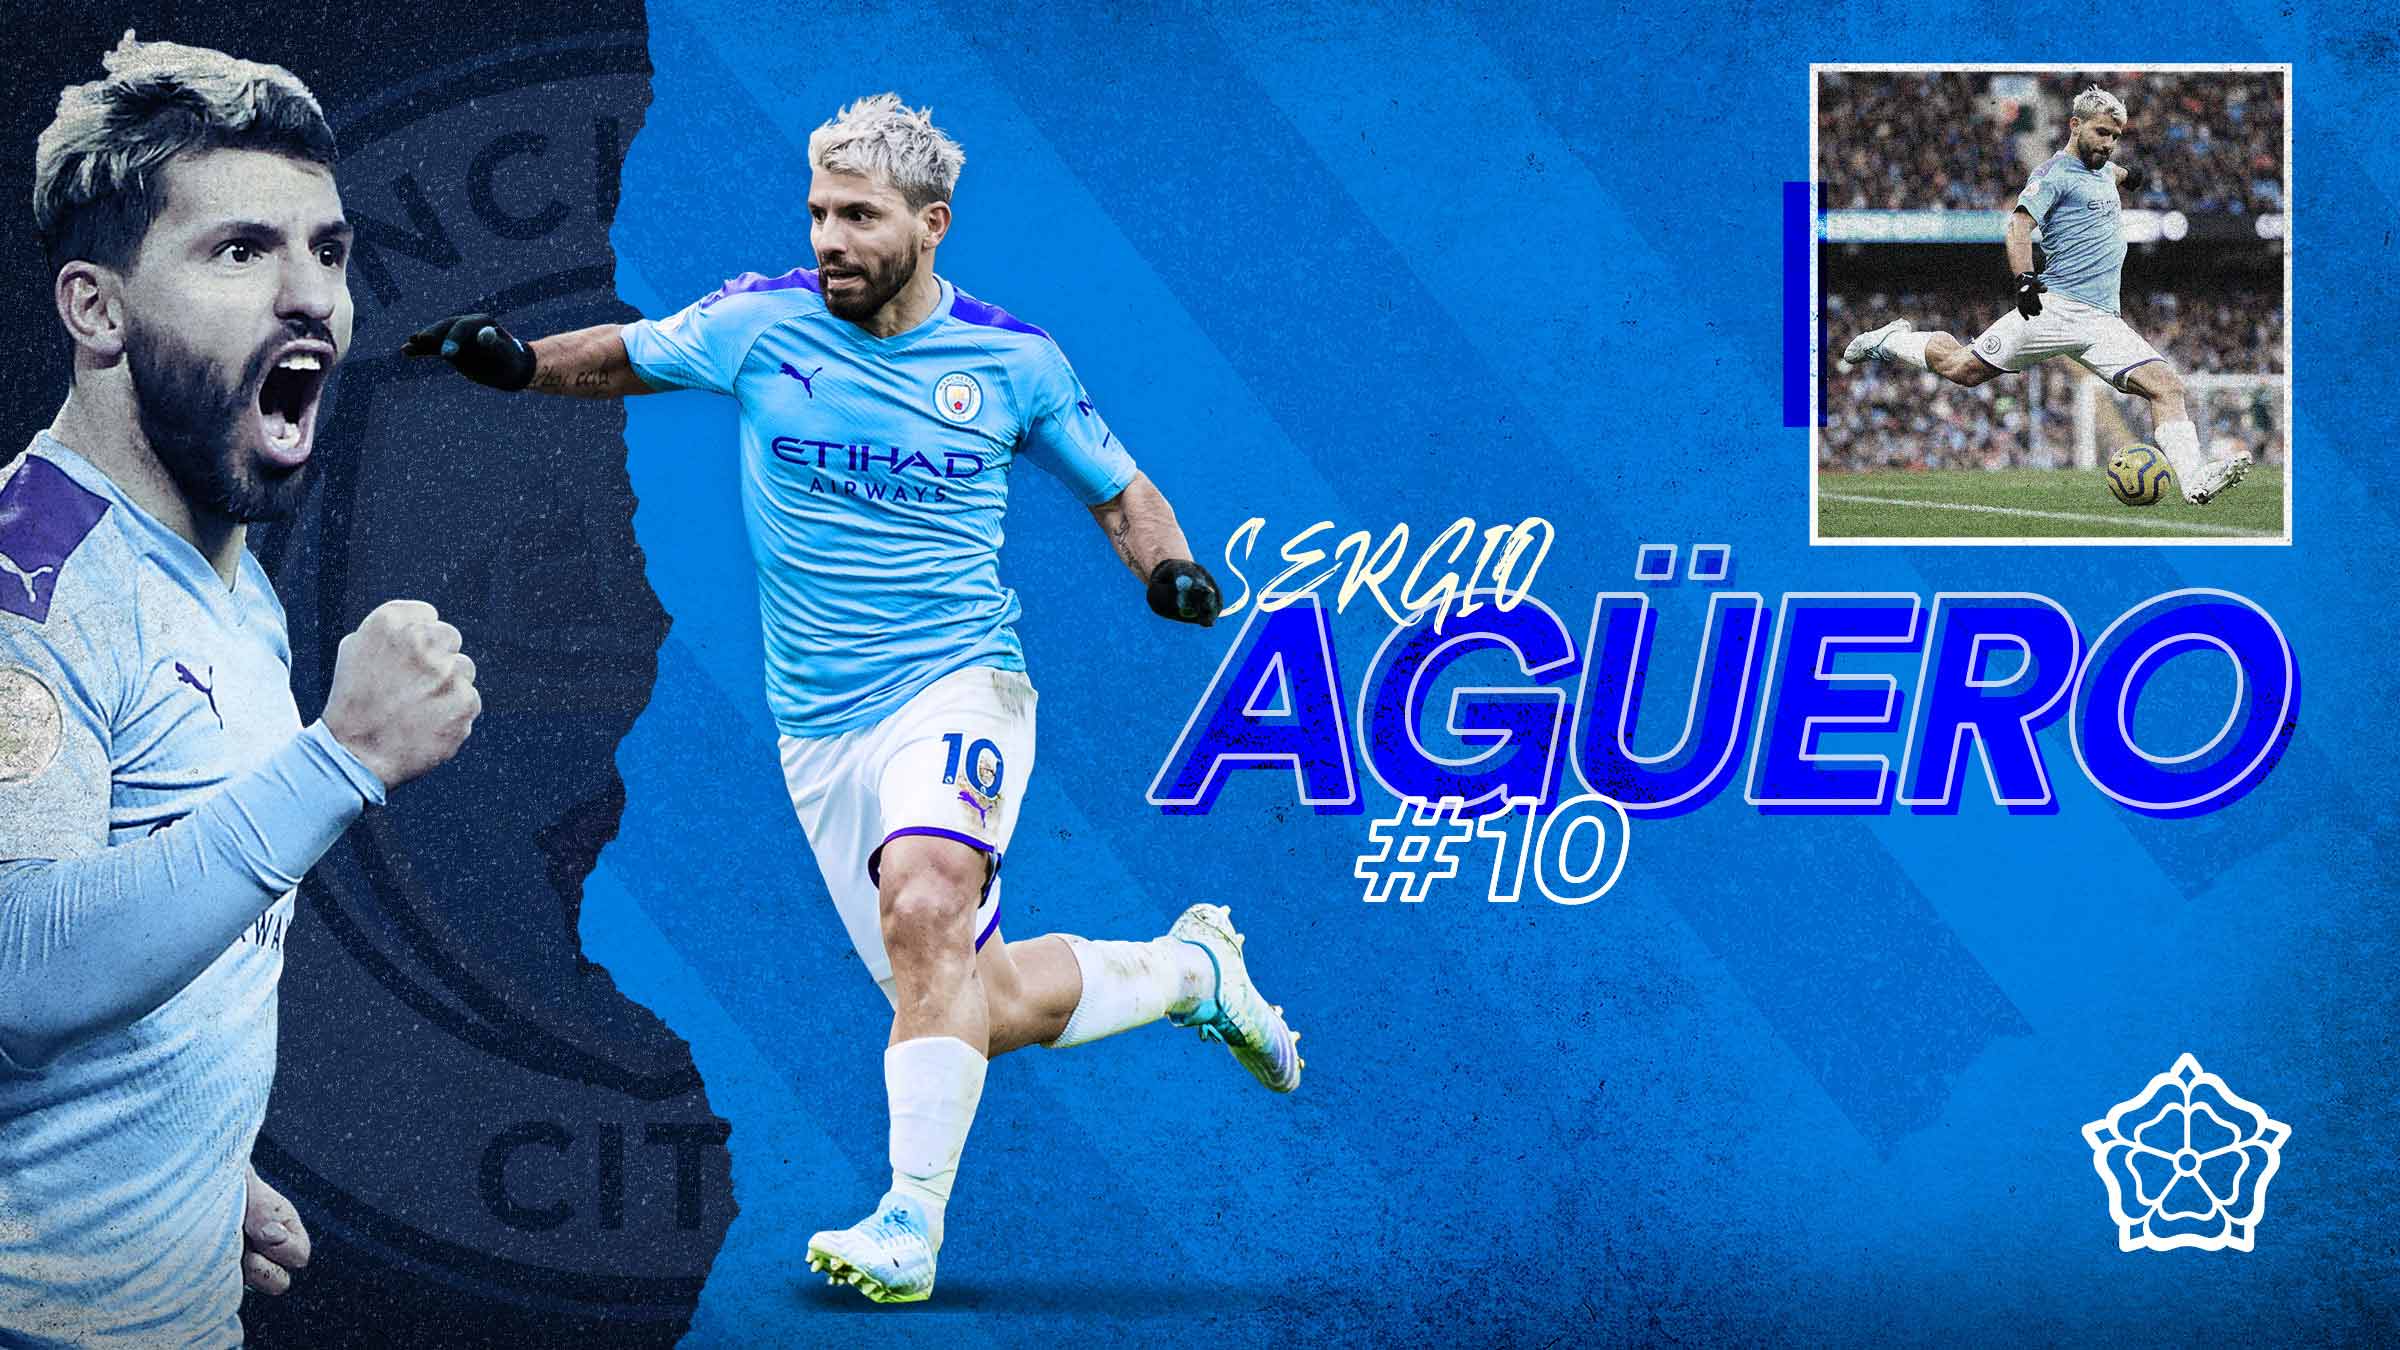 Manchester City player Sergio Agüero